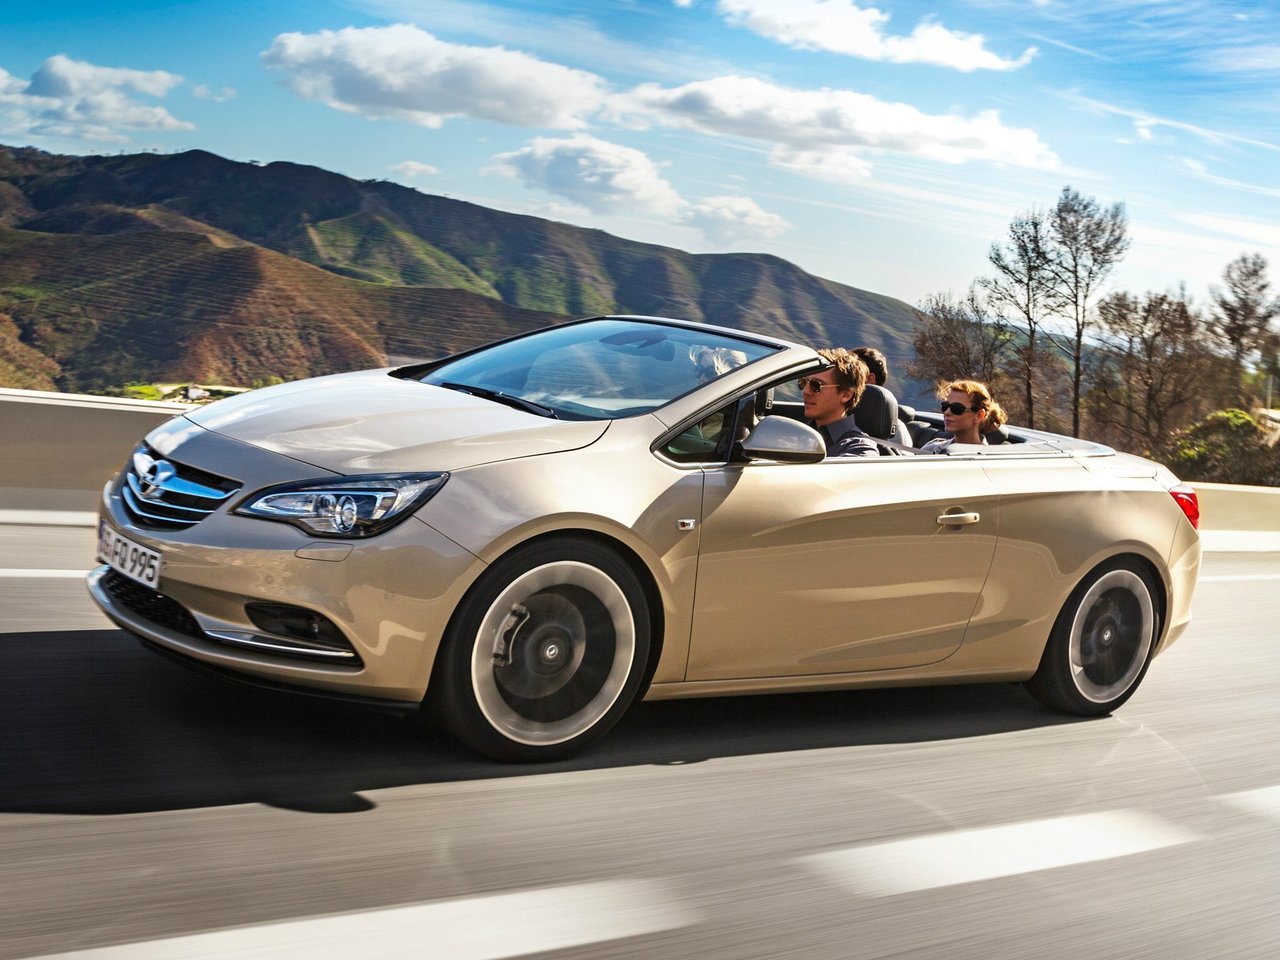 Снижаем расход Opel Cascada на топливо, устанавливаем ГБО